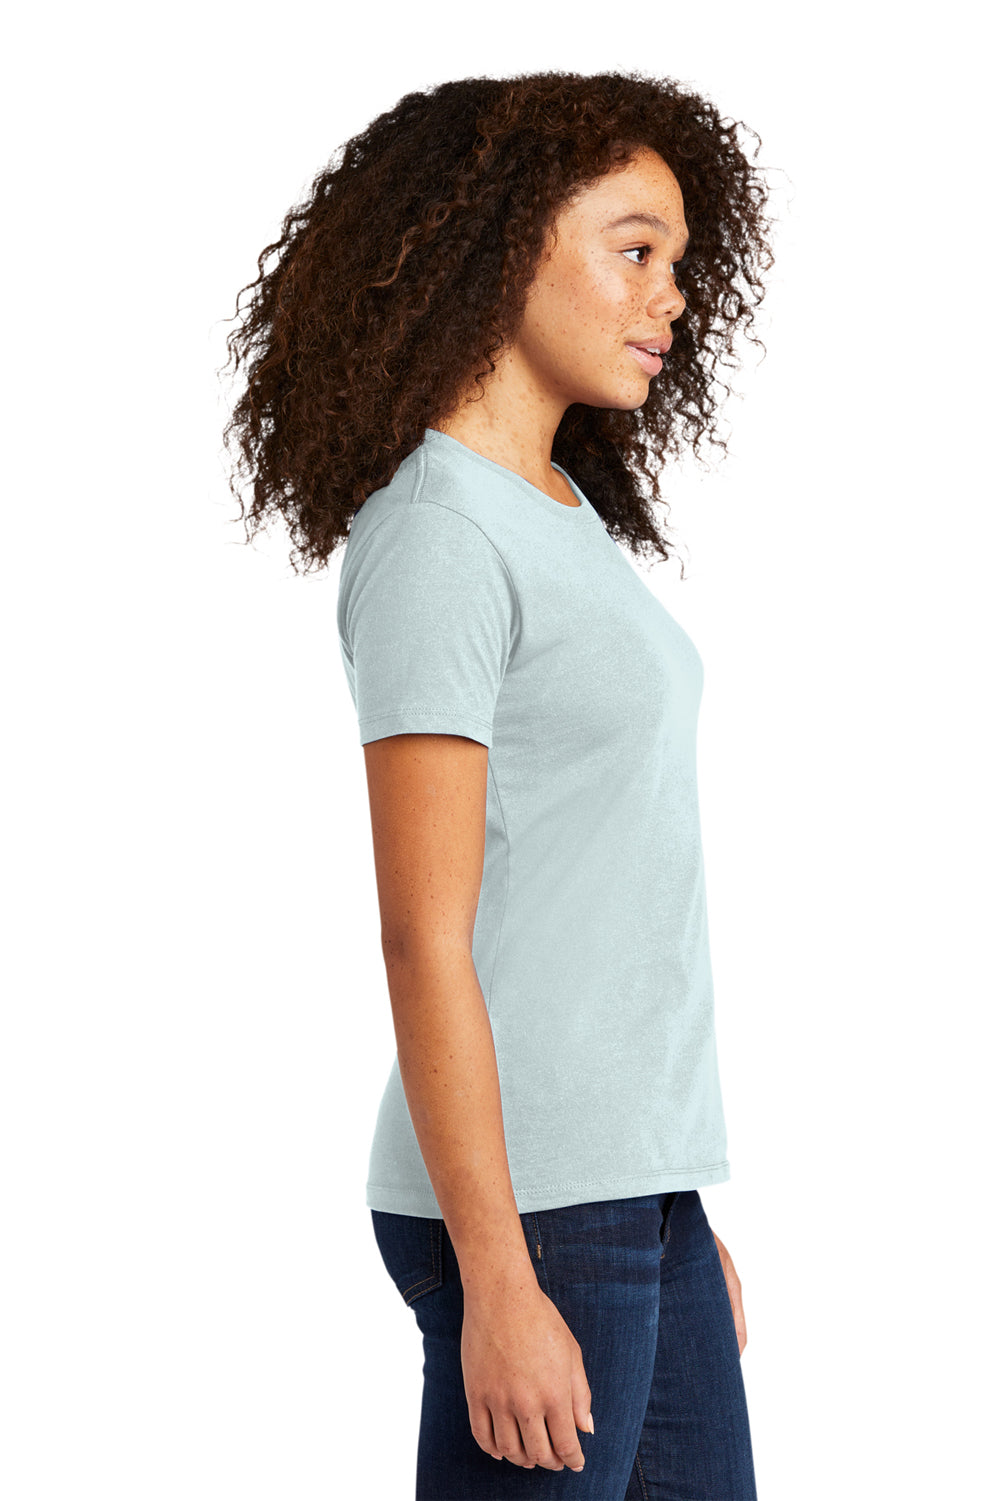 Next Level NL3900/N3900/3900 Womens Boyfriend Fine Jersey Short Sleeve Crewneck T-Shirt Light Blue Side